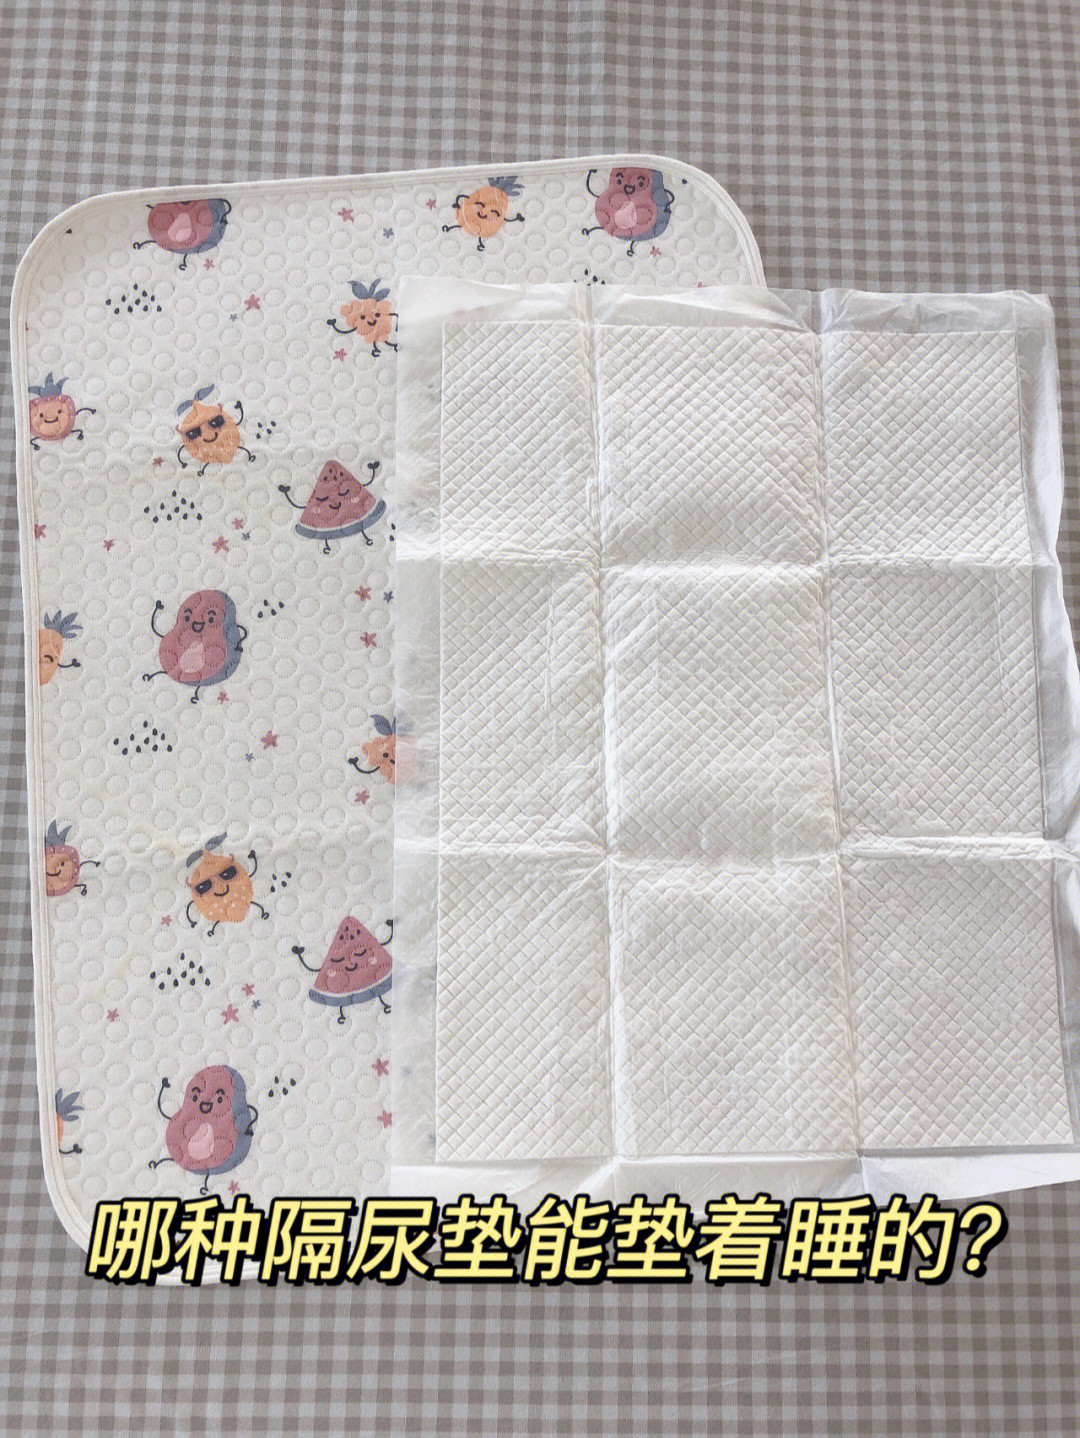 纸尿垫的正确垫法图解图片